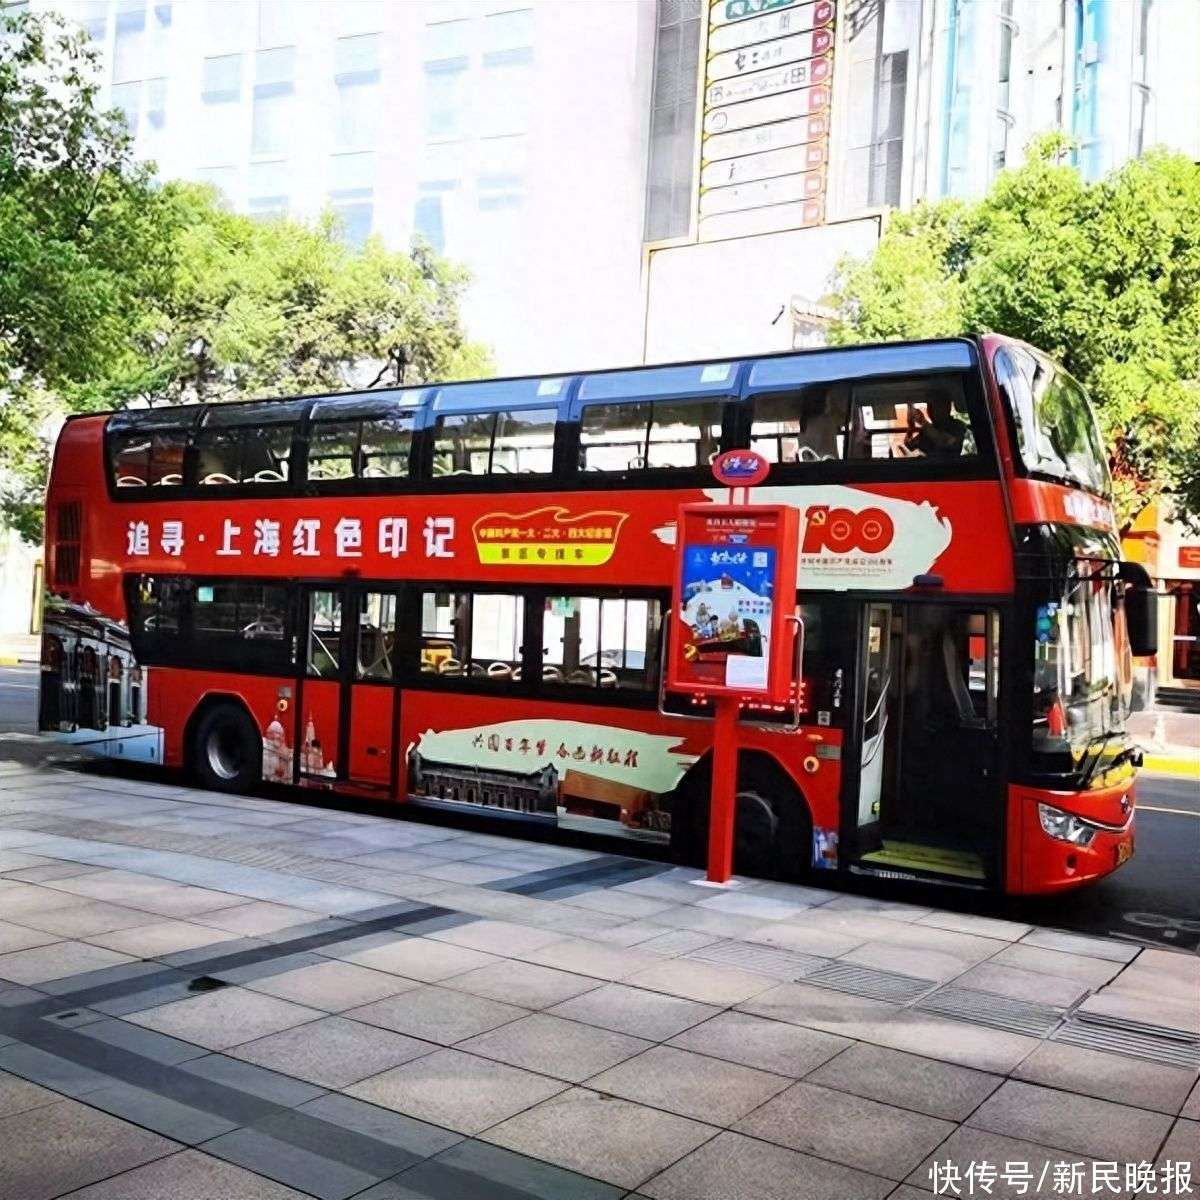 【案例回顾】“康师傅绿茶”双层观光巴士 - 上海天迪广告-上海公交车身广告-双层巴士广告-站台候车亭广告